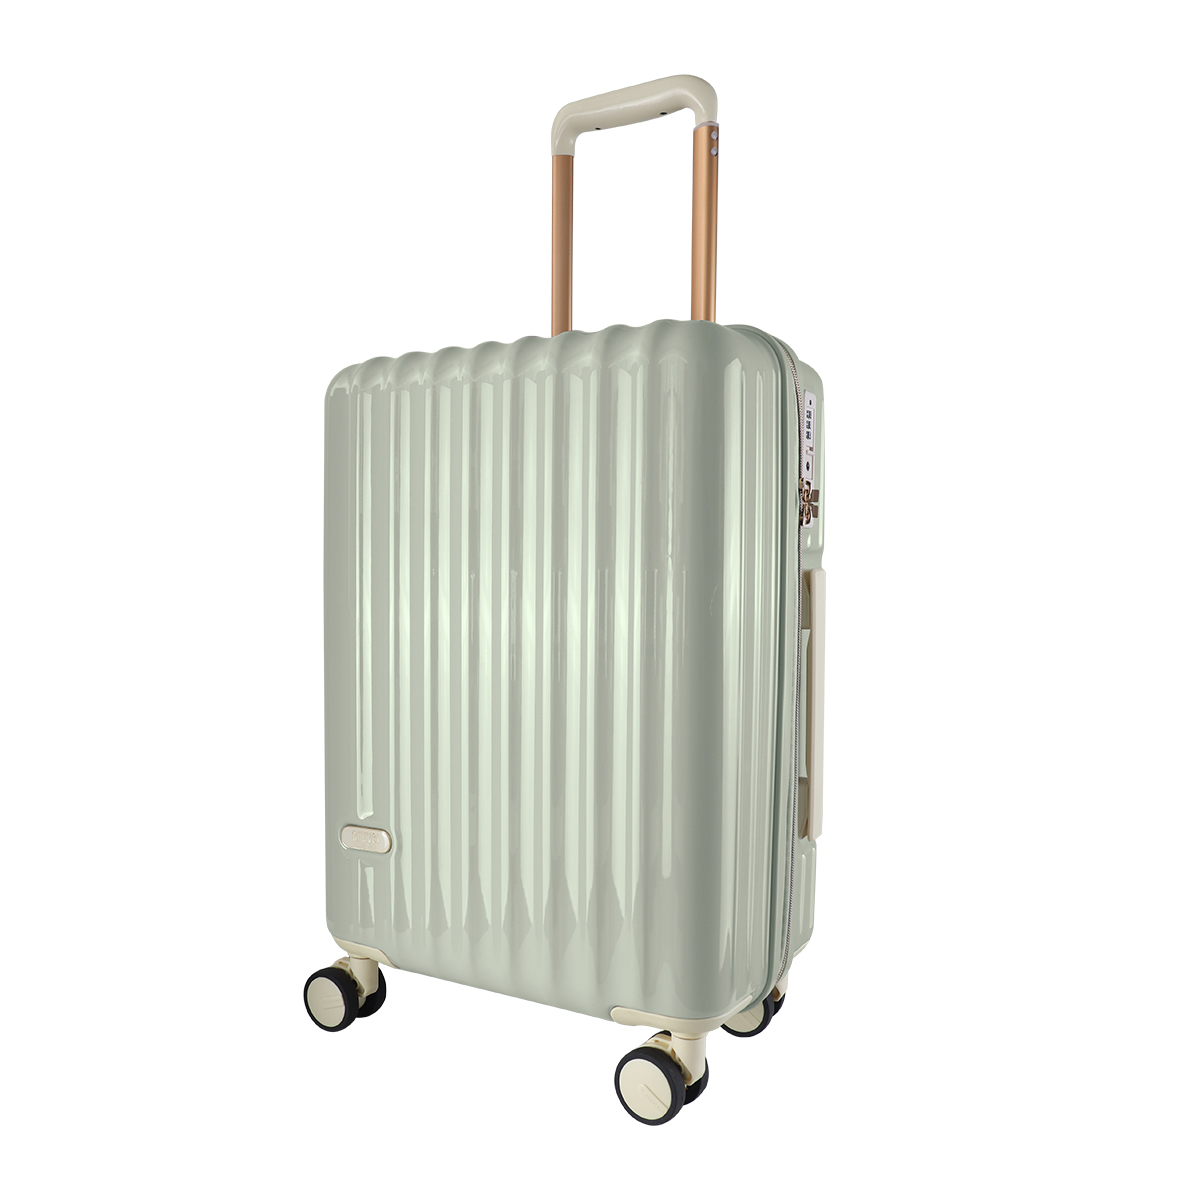 スーツケース 機内持ち込み Sサイズ 軽量 小型 キャリーケース キャリーバッグ 39L 2泊3日 TSAロック おしゃれ かわいい 旅行かばん 旅行  旅行用品 WEIMALL